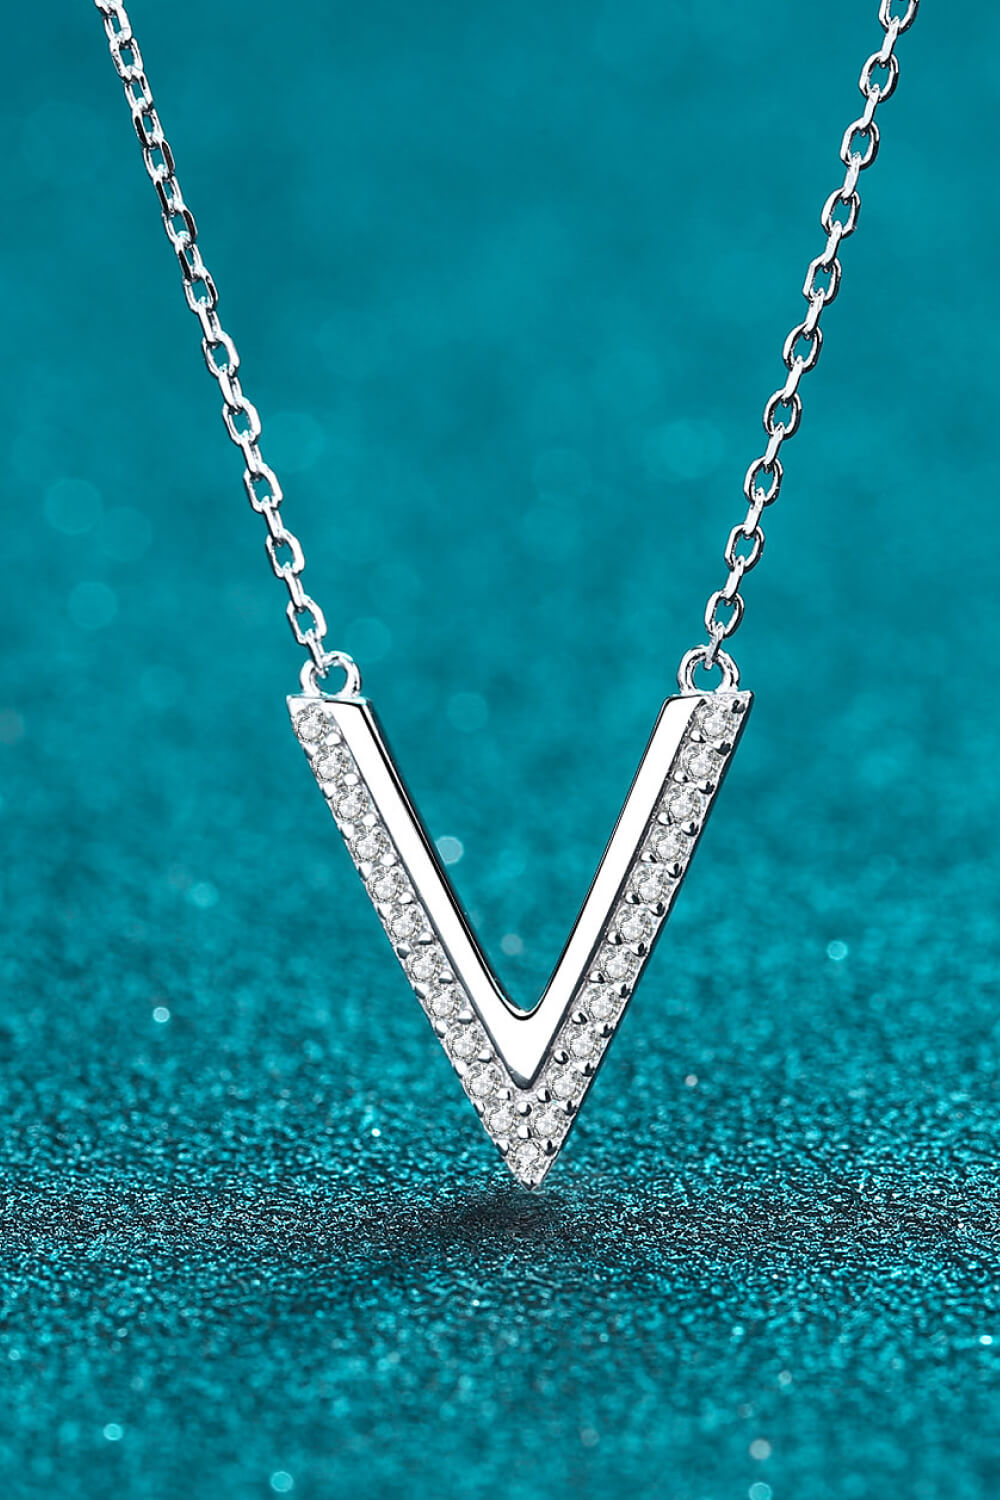 Sterling Silver Letter V Pendant Necklace